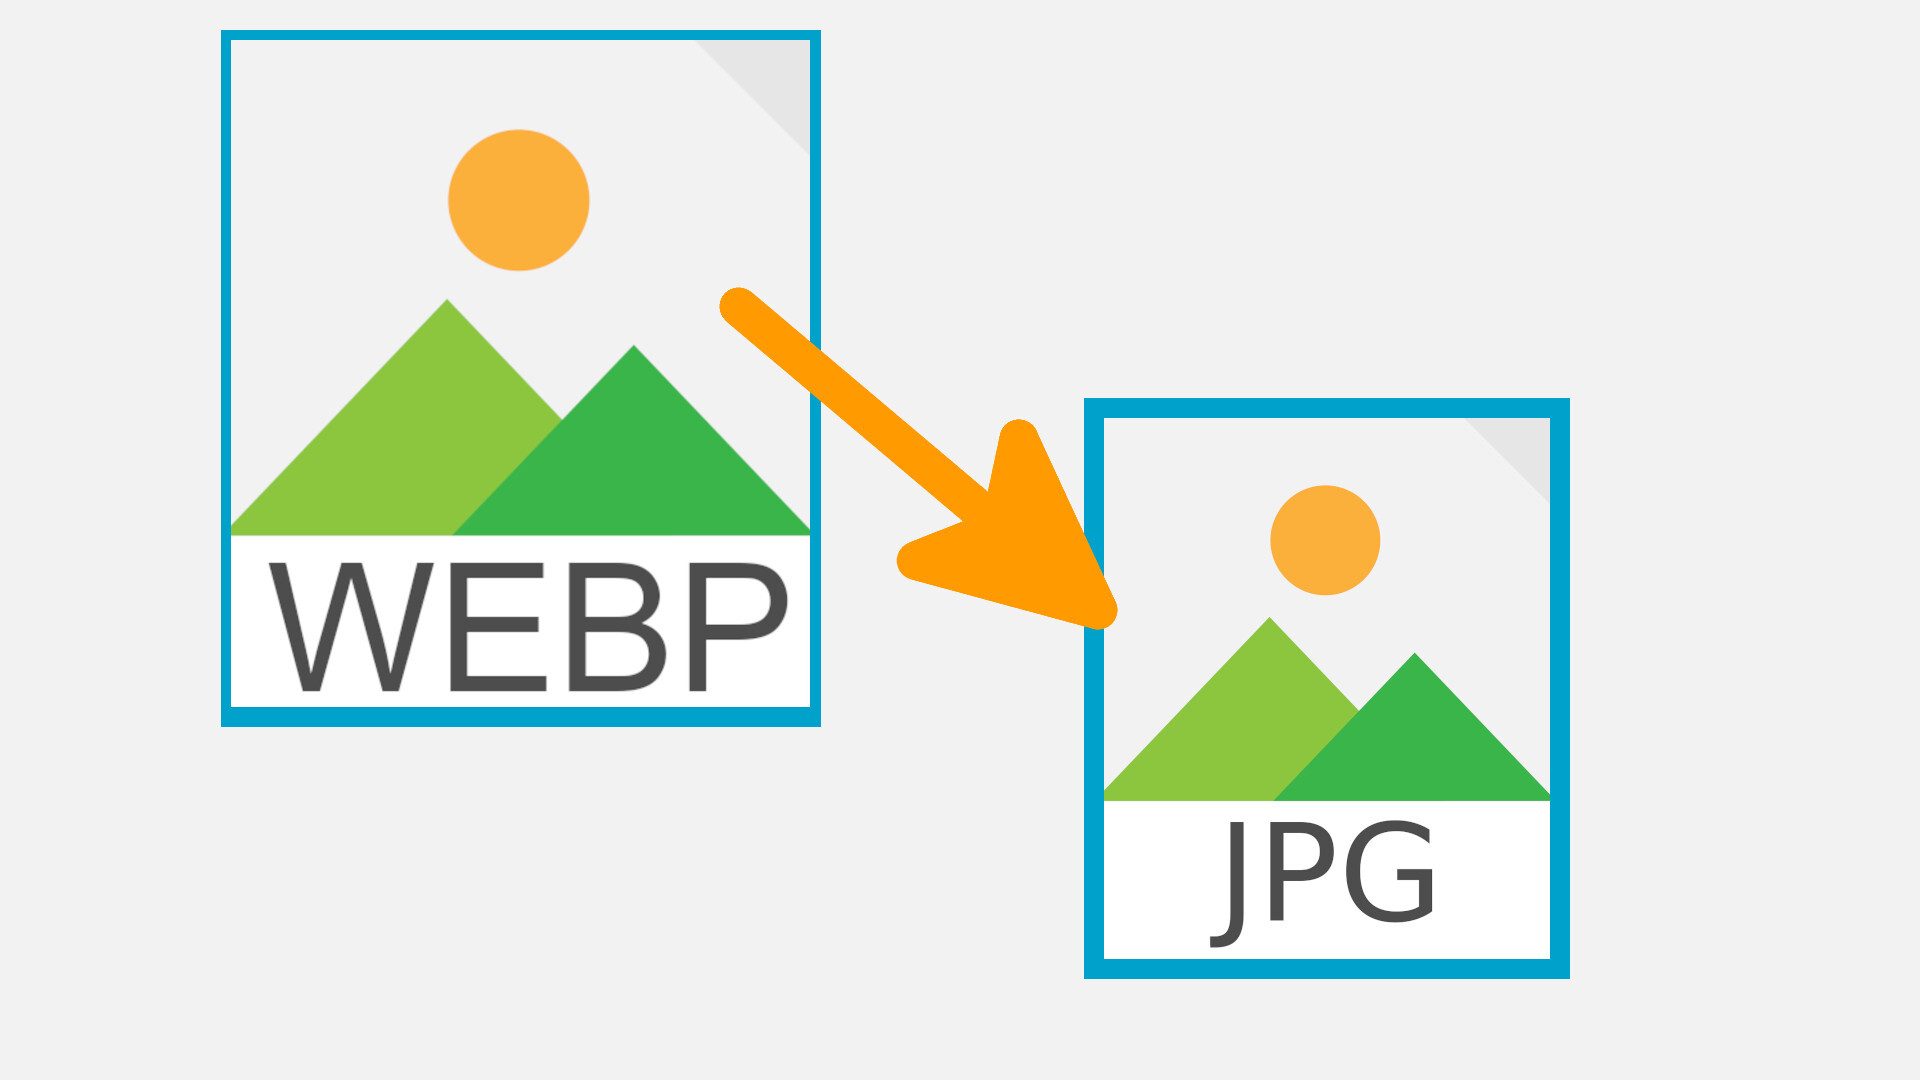 Webp in png. Webp изображения. Преобразователь webp в jpg. Конвертер webp. Конвертер wepp jpg.